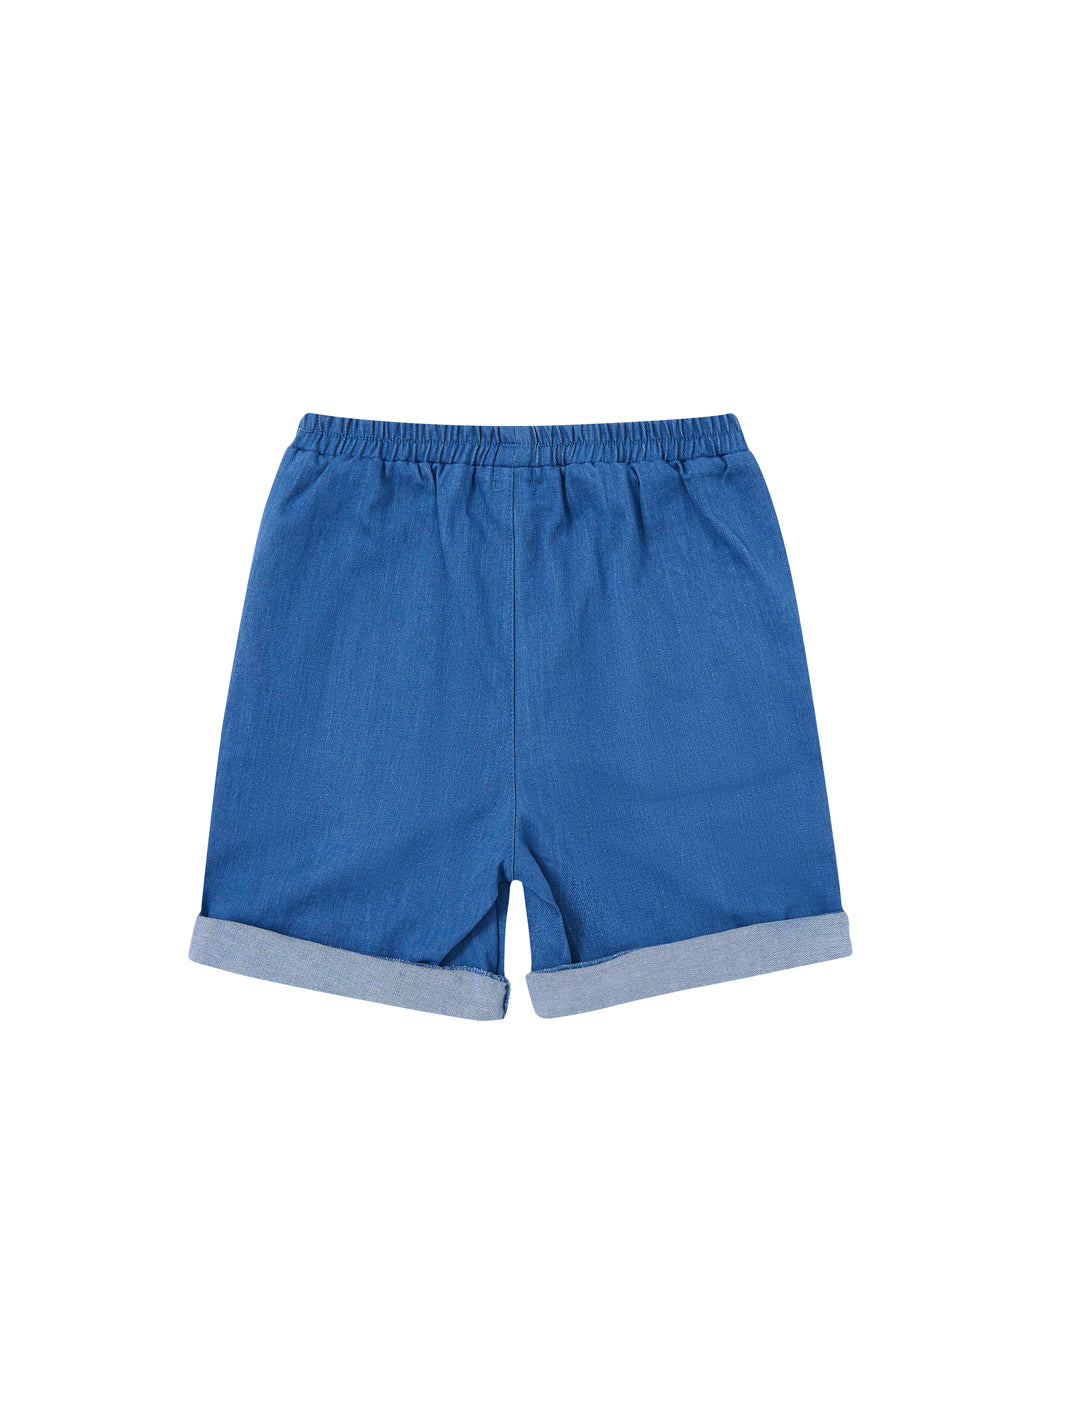 Denim Shorts Pants - Lt. Blue Denim